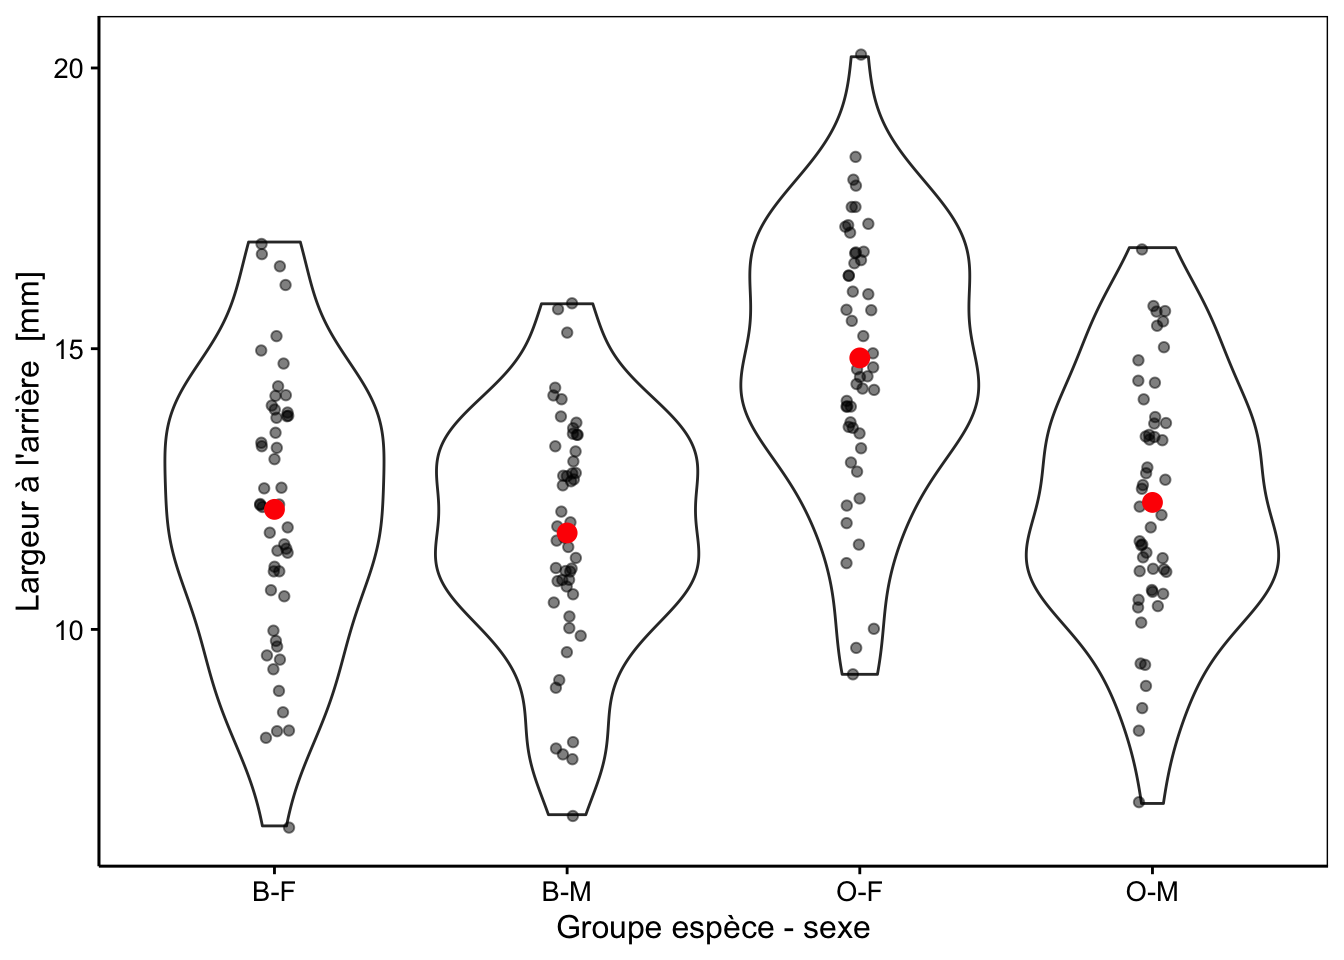 Largeur arrière en fonction du groupe de crabes *L. variegatus*. Graphique adéquat pour comparer les moyennes et distributions dans le cas d'un nombre important de réplicas (moyennes en rouge + observations individuelles en noir semi-transparent superposées à des graphiques en violon).